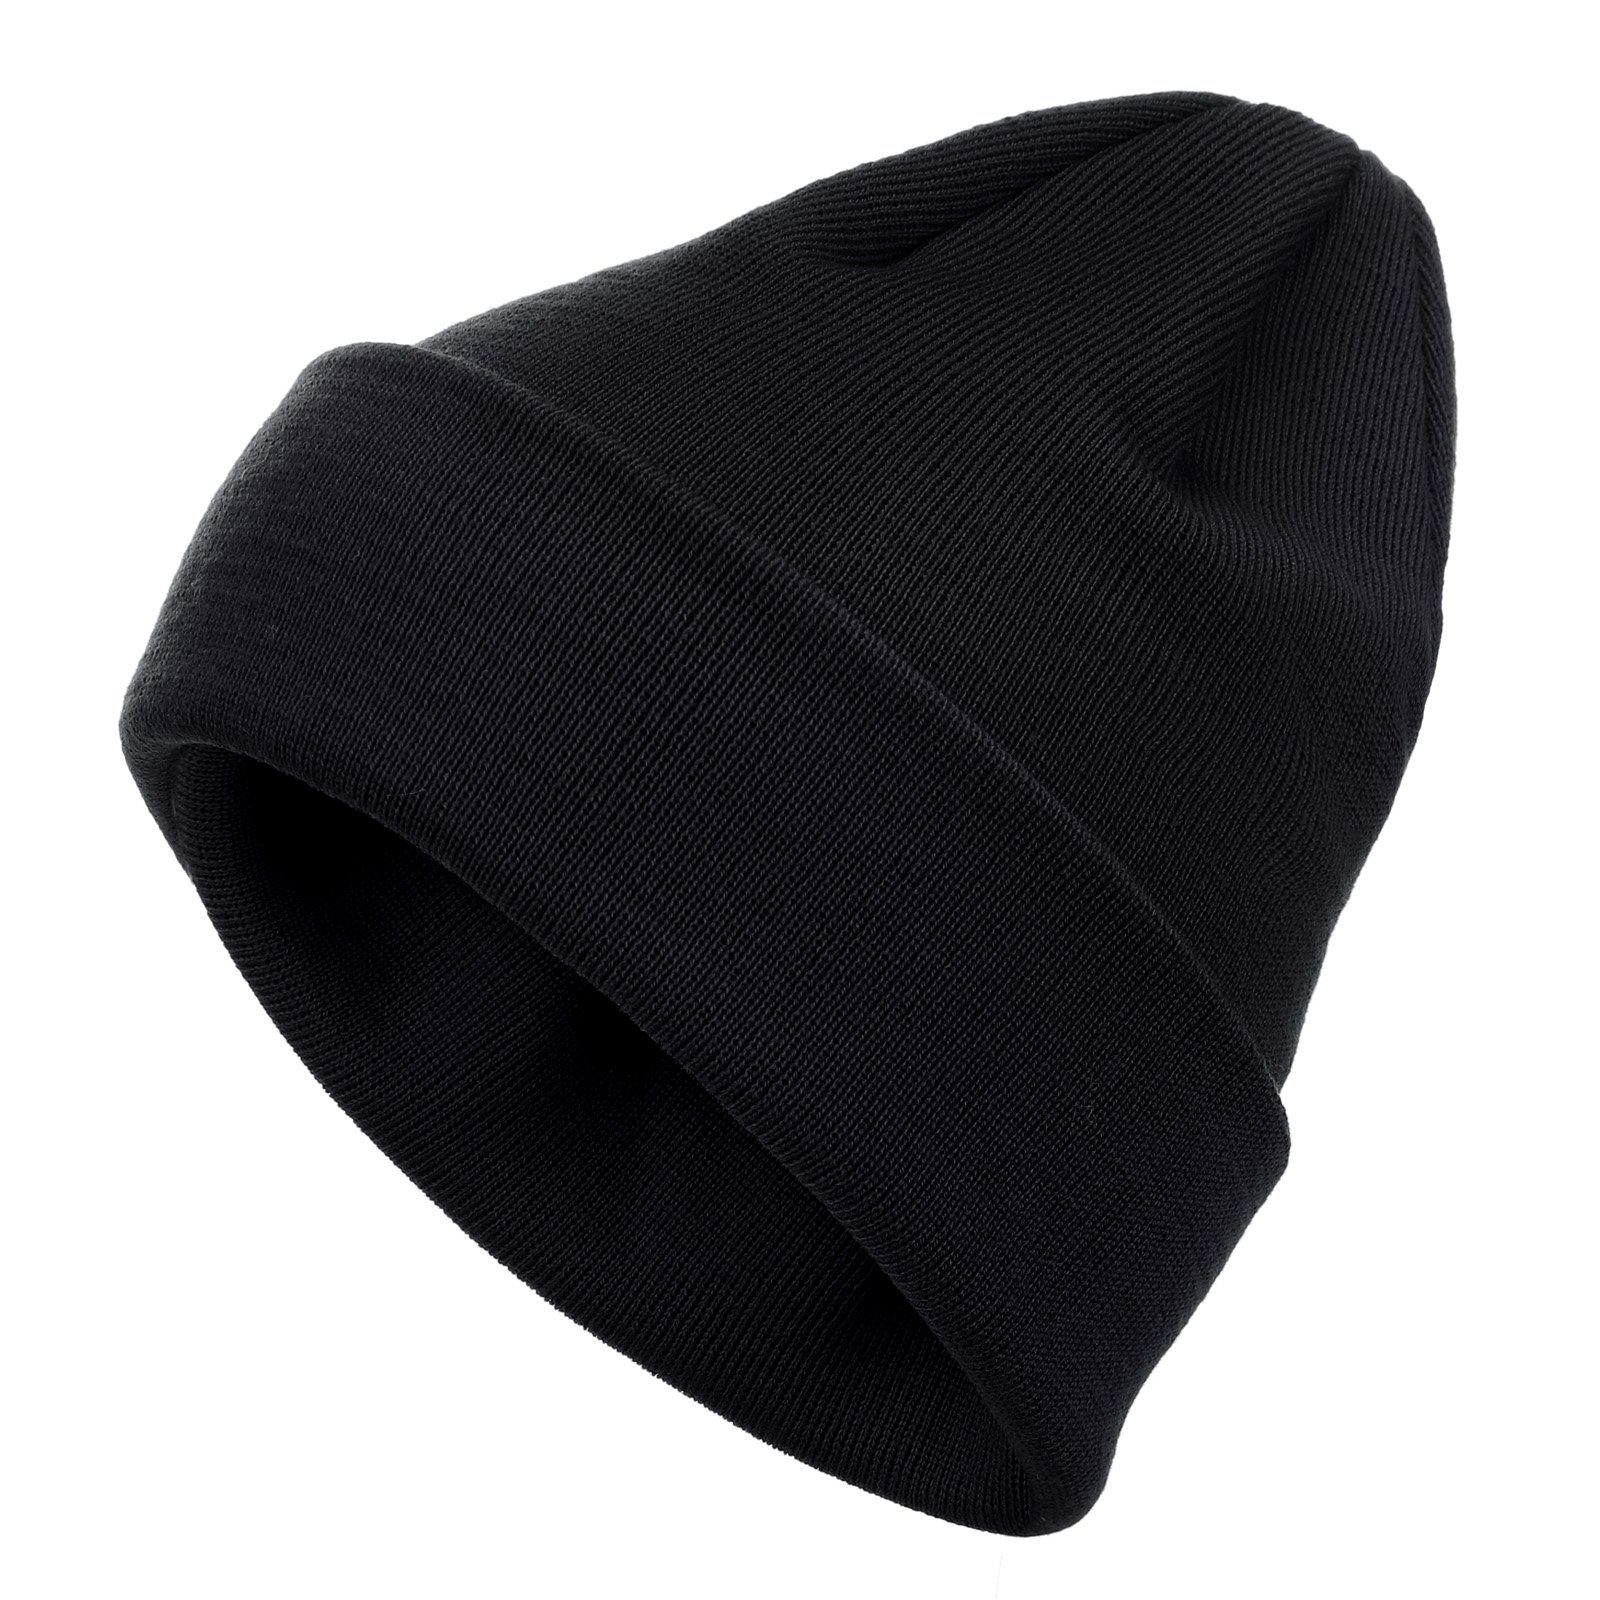 schwarz Strickmütze aus modAS - Unisex Mütze in doppellagiger Wollmütze Qualität (90) Merinowolle